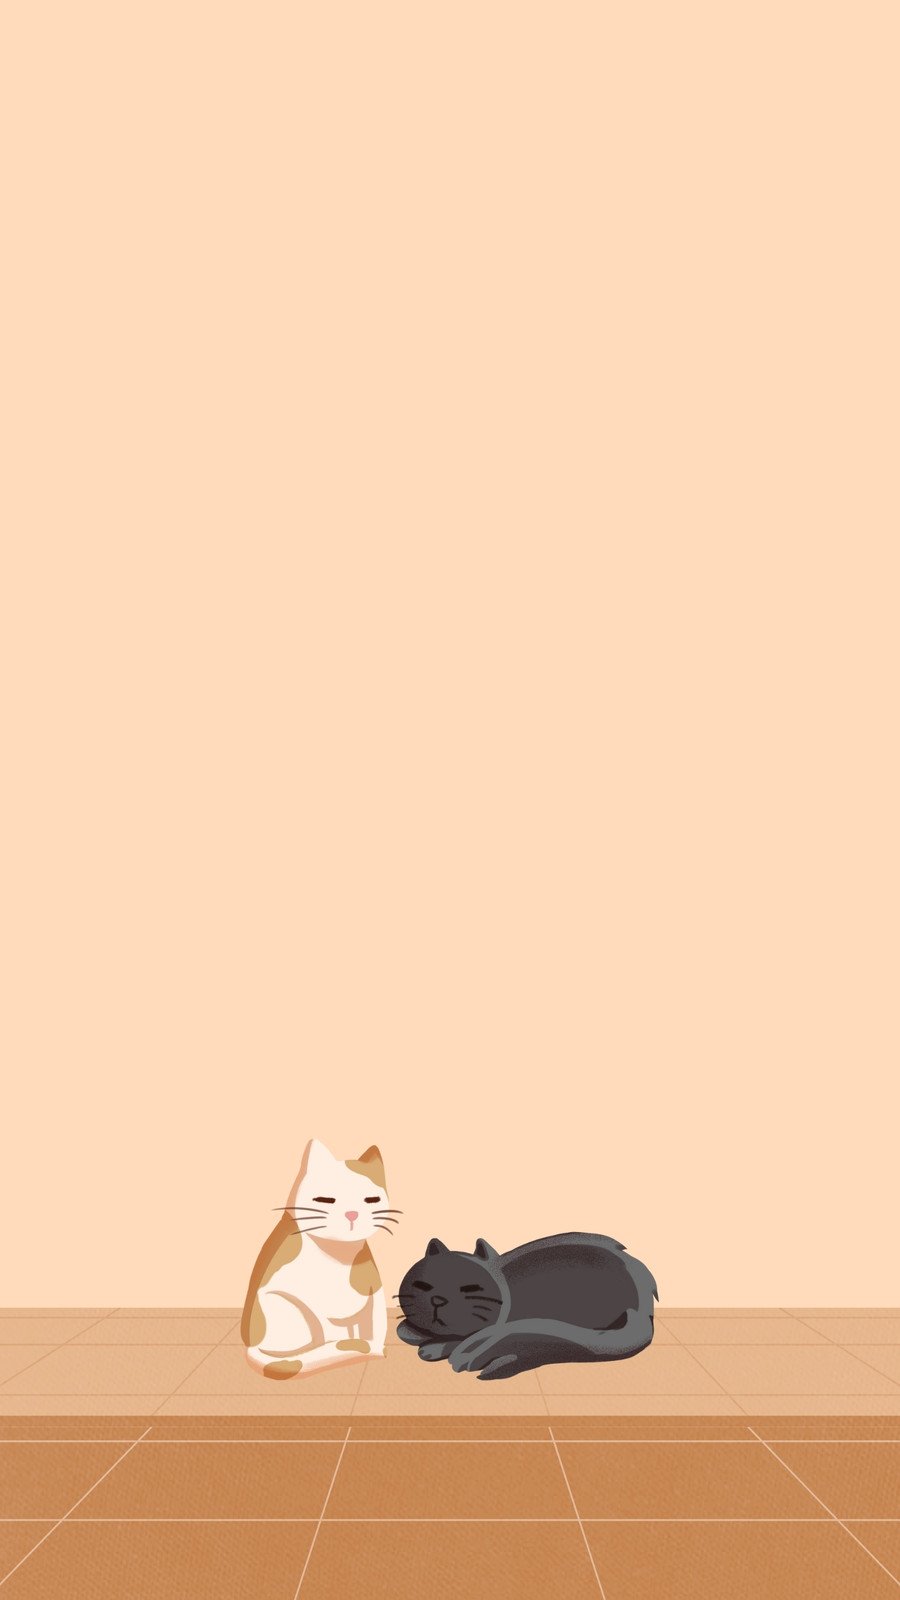 cat phone wallpaper